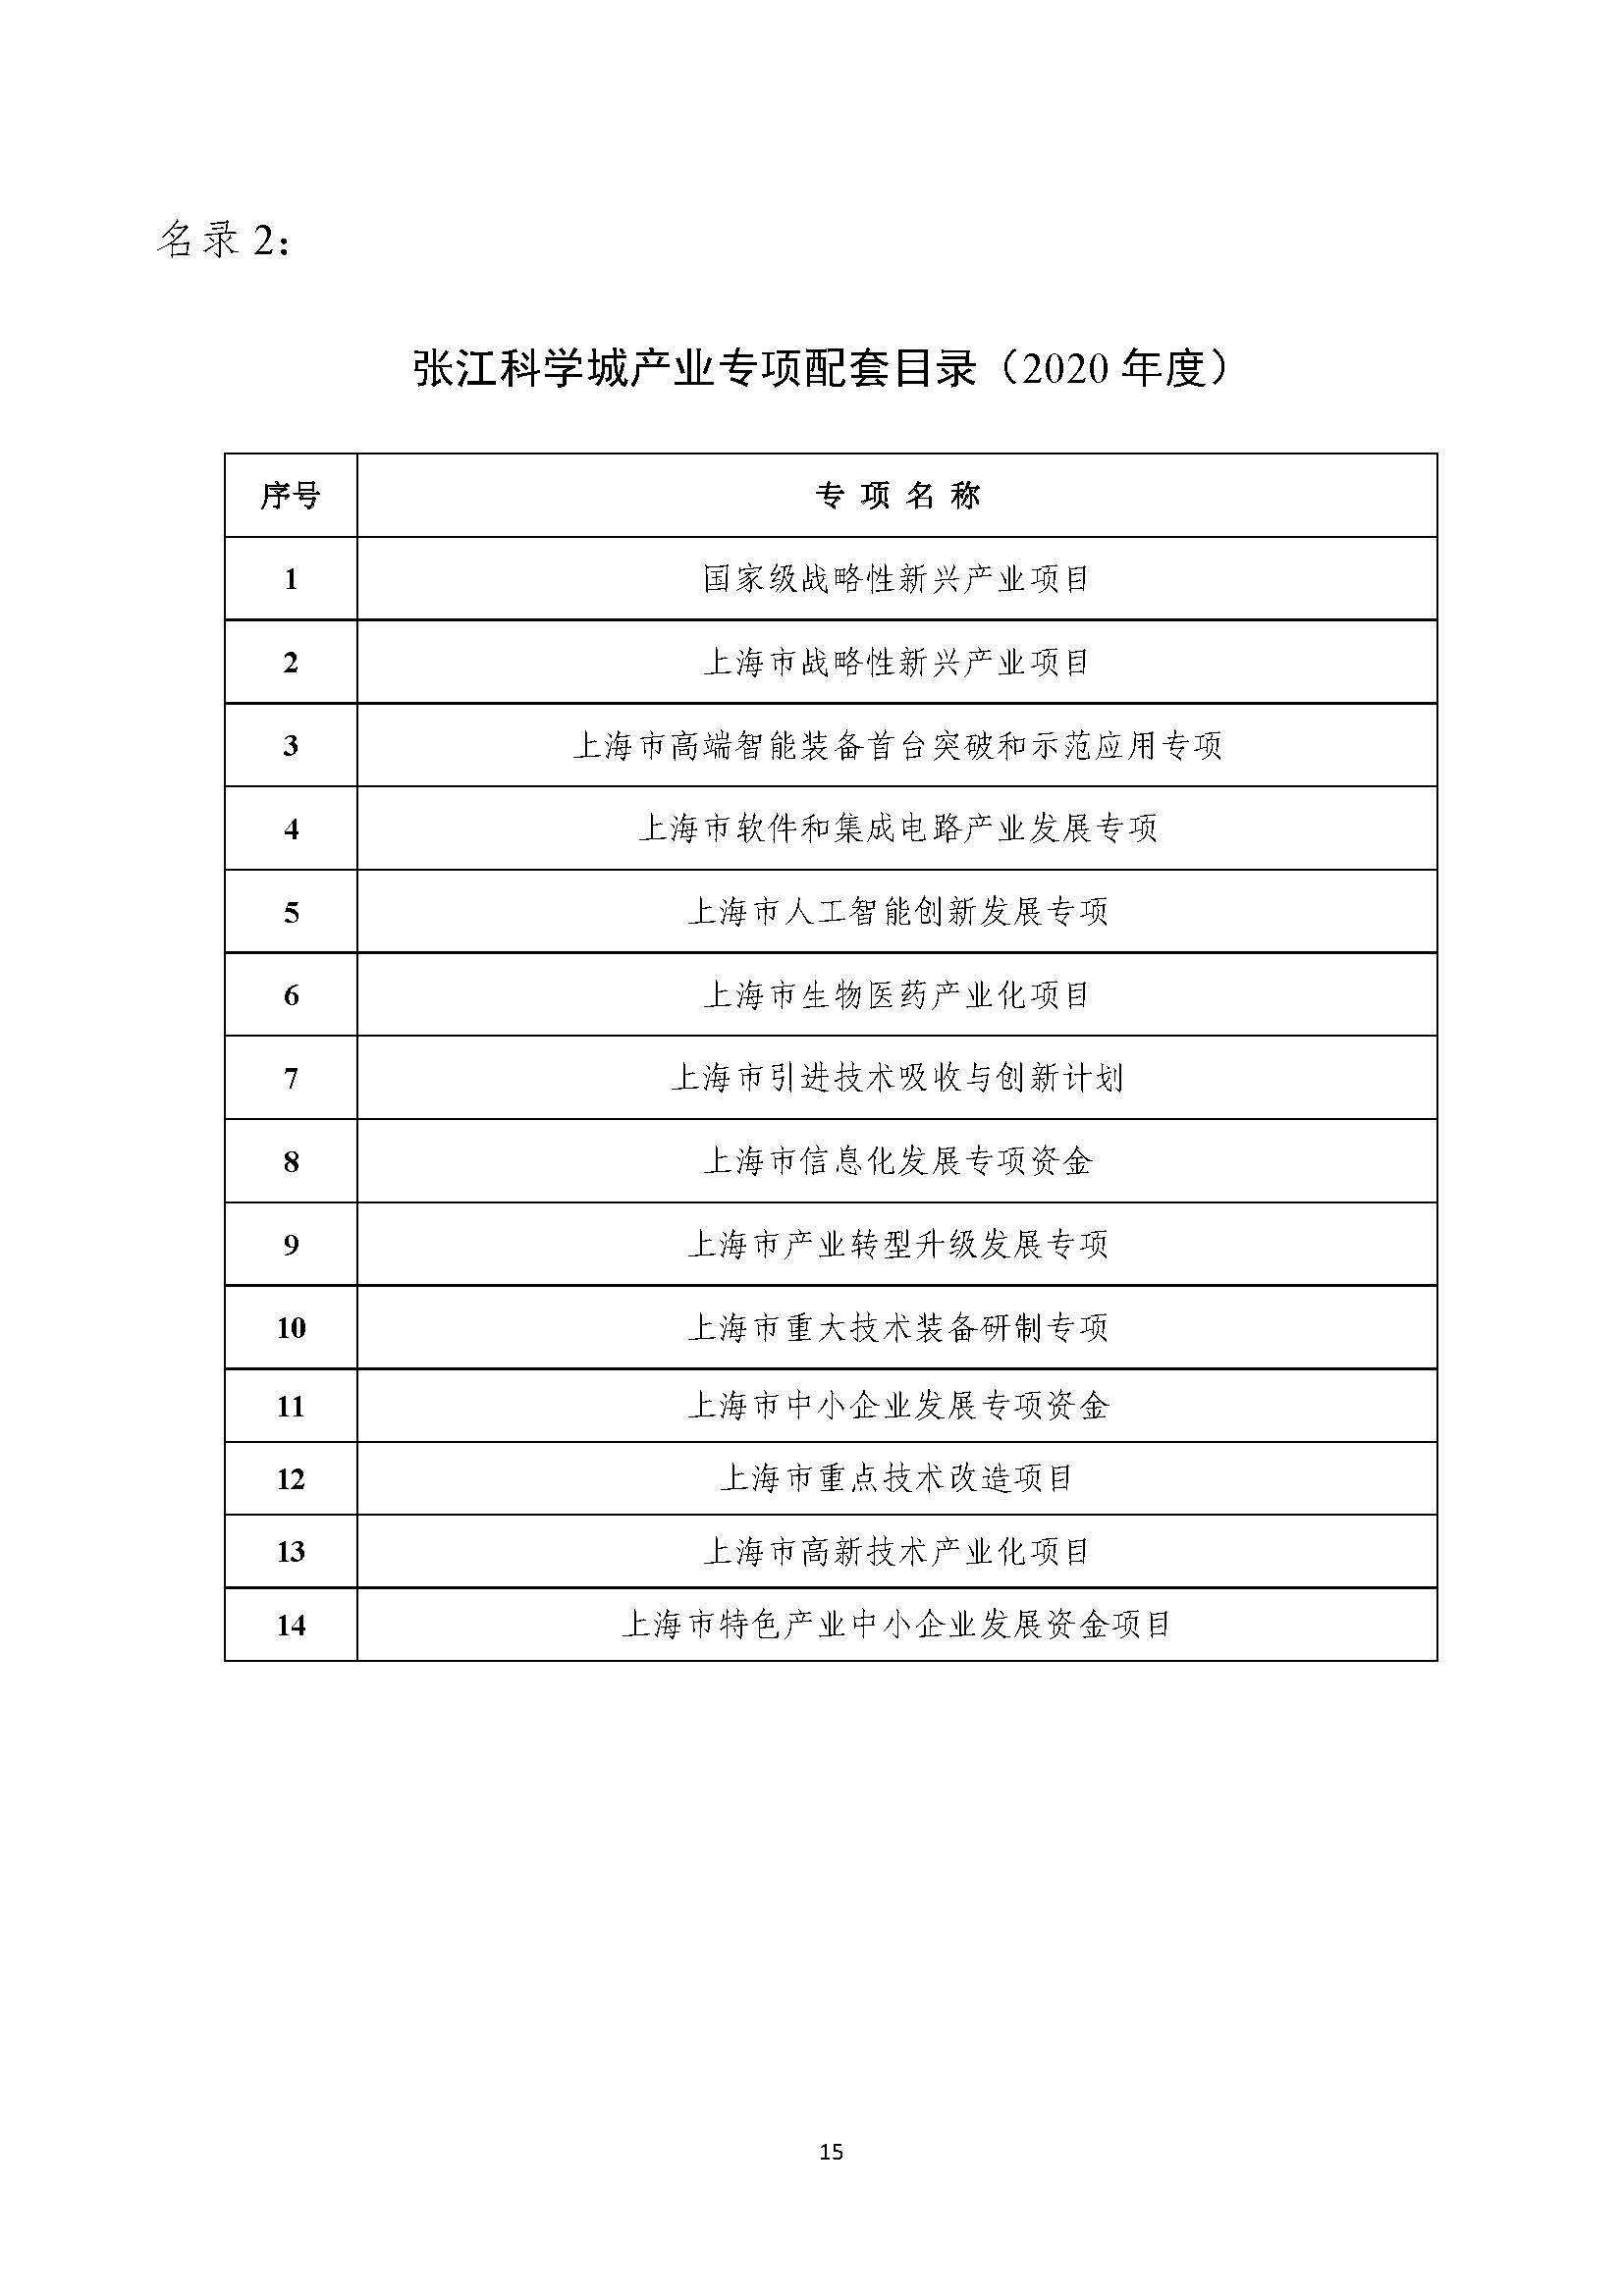 2021年张江科学城专项政策申报指南_页面_15.jpg